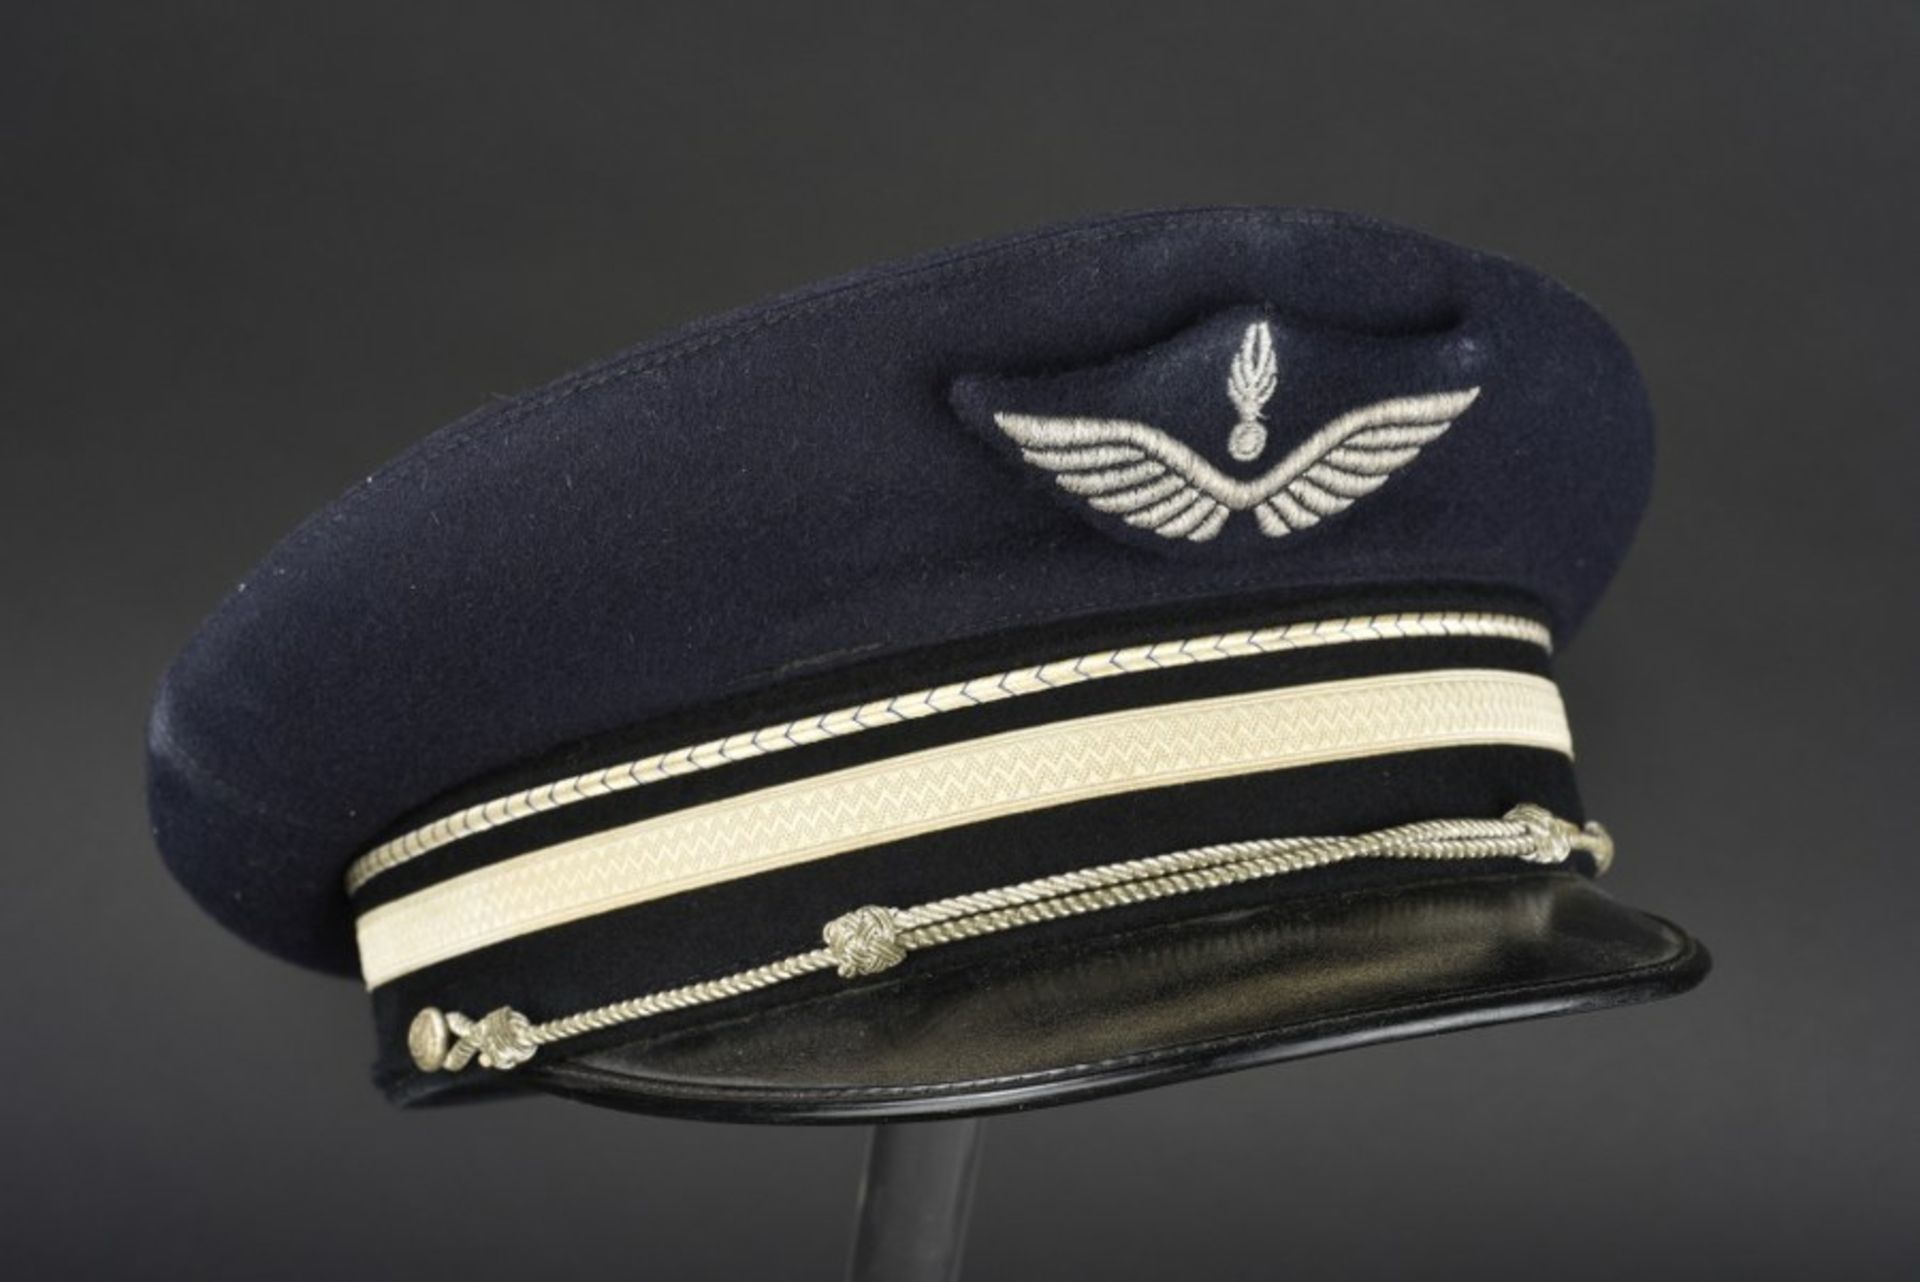 Ensemble de casquette de la Gendarmerie (après-guerre et contemporain) comprenant 2 gendarmerie de - Bild 3 aus 4